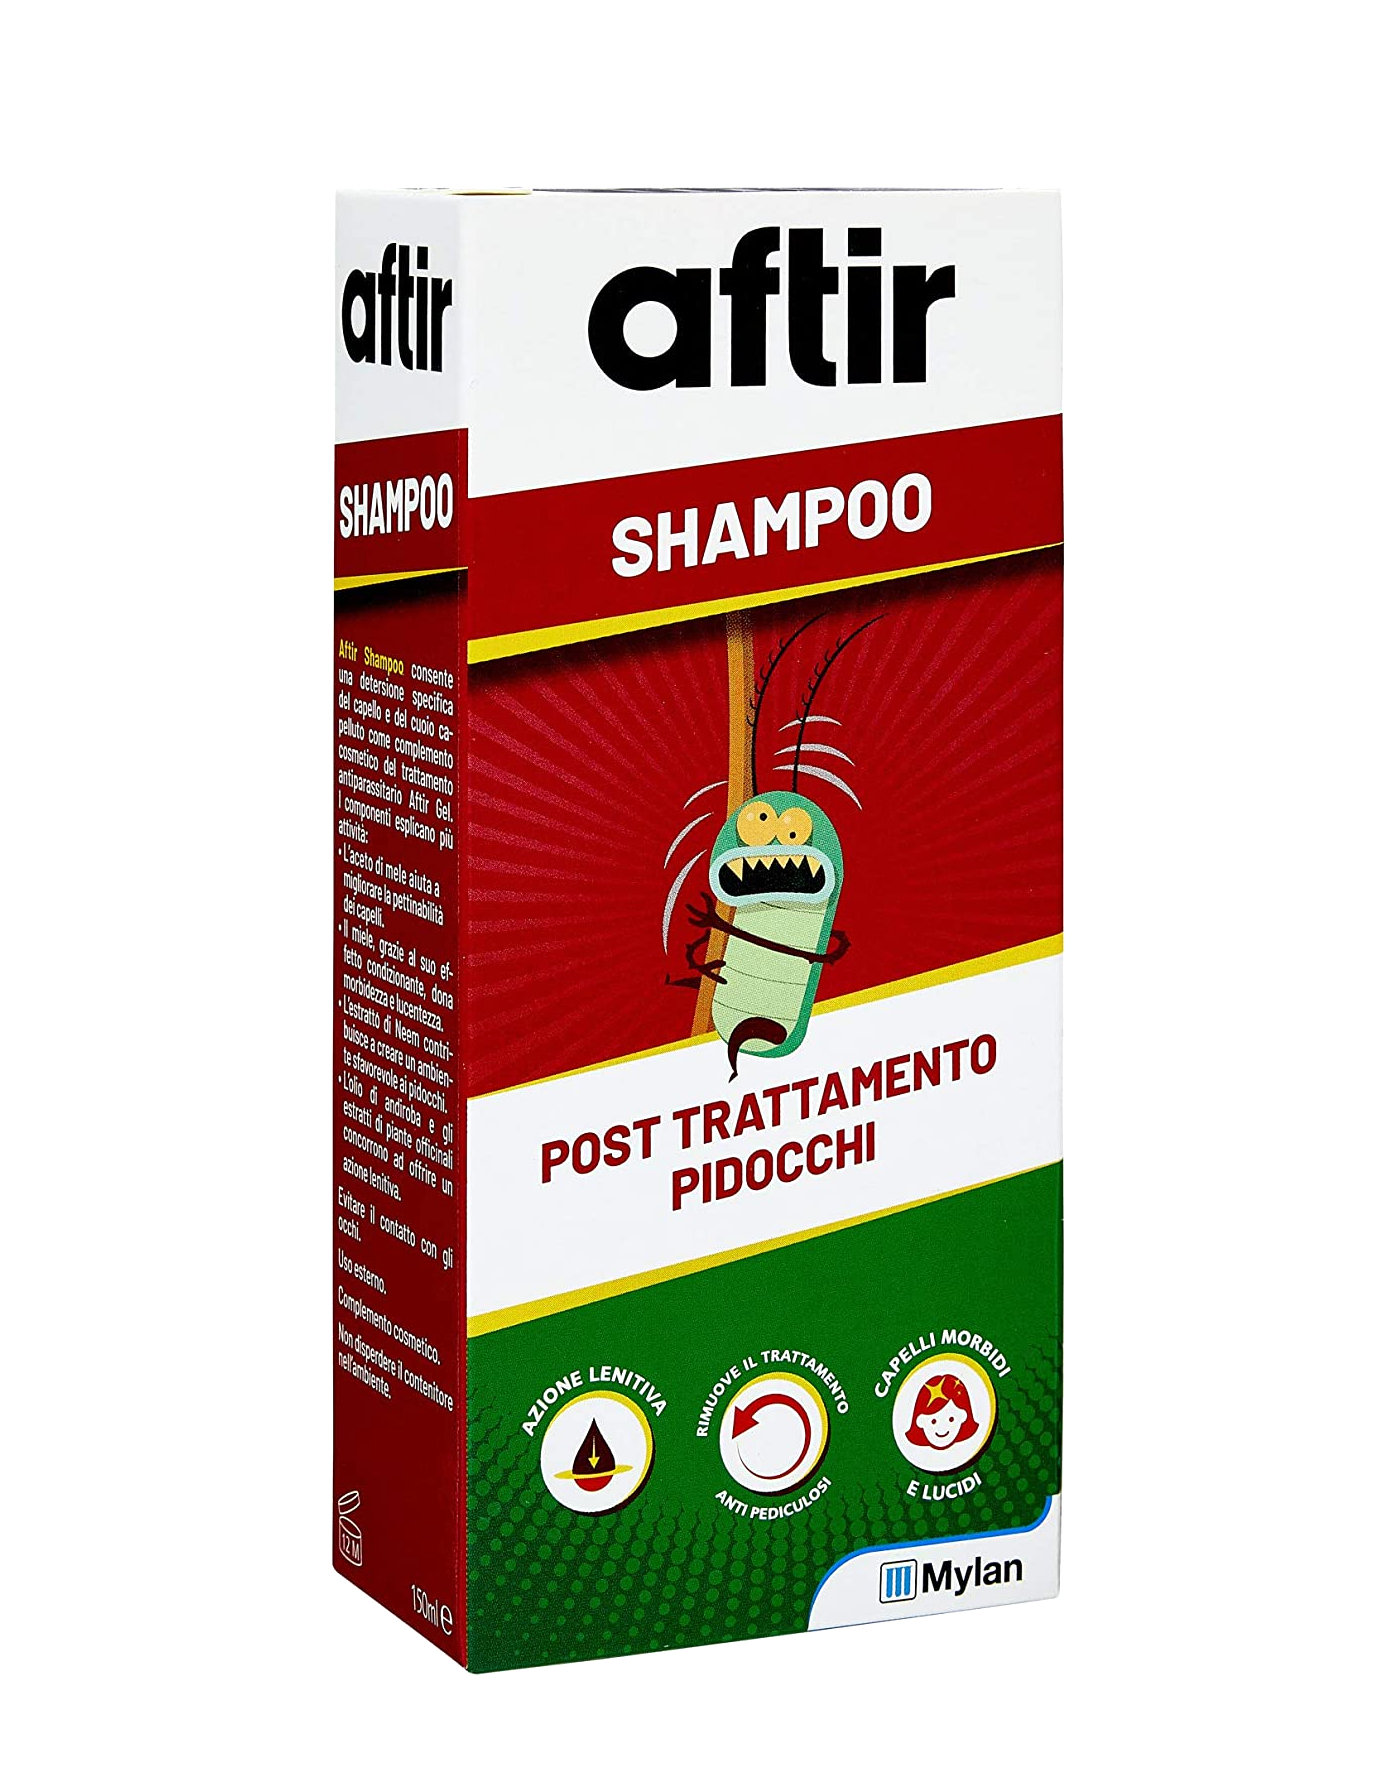 Aftir Shampoo Post Trattamento Pidocchi by Aftir, 150 ml 